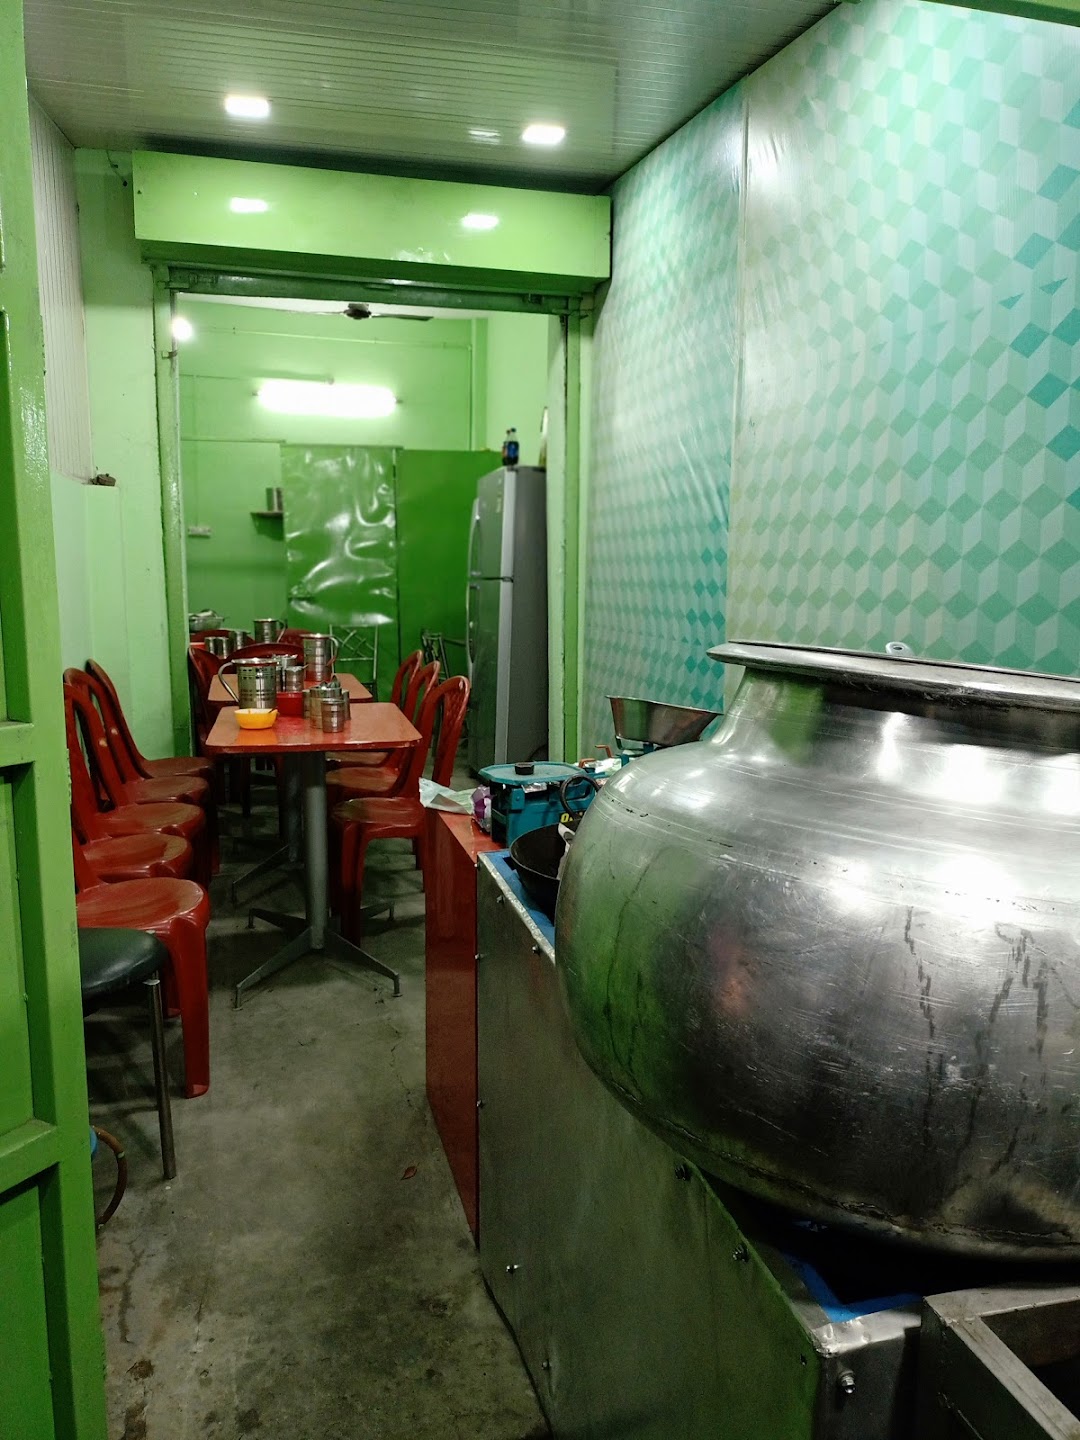 Shahi darbar restaurant